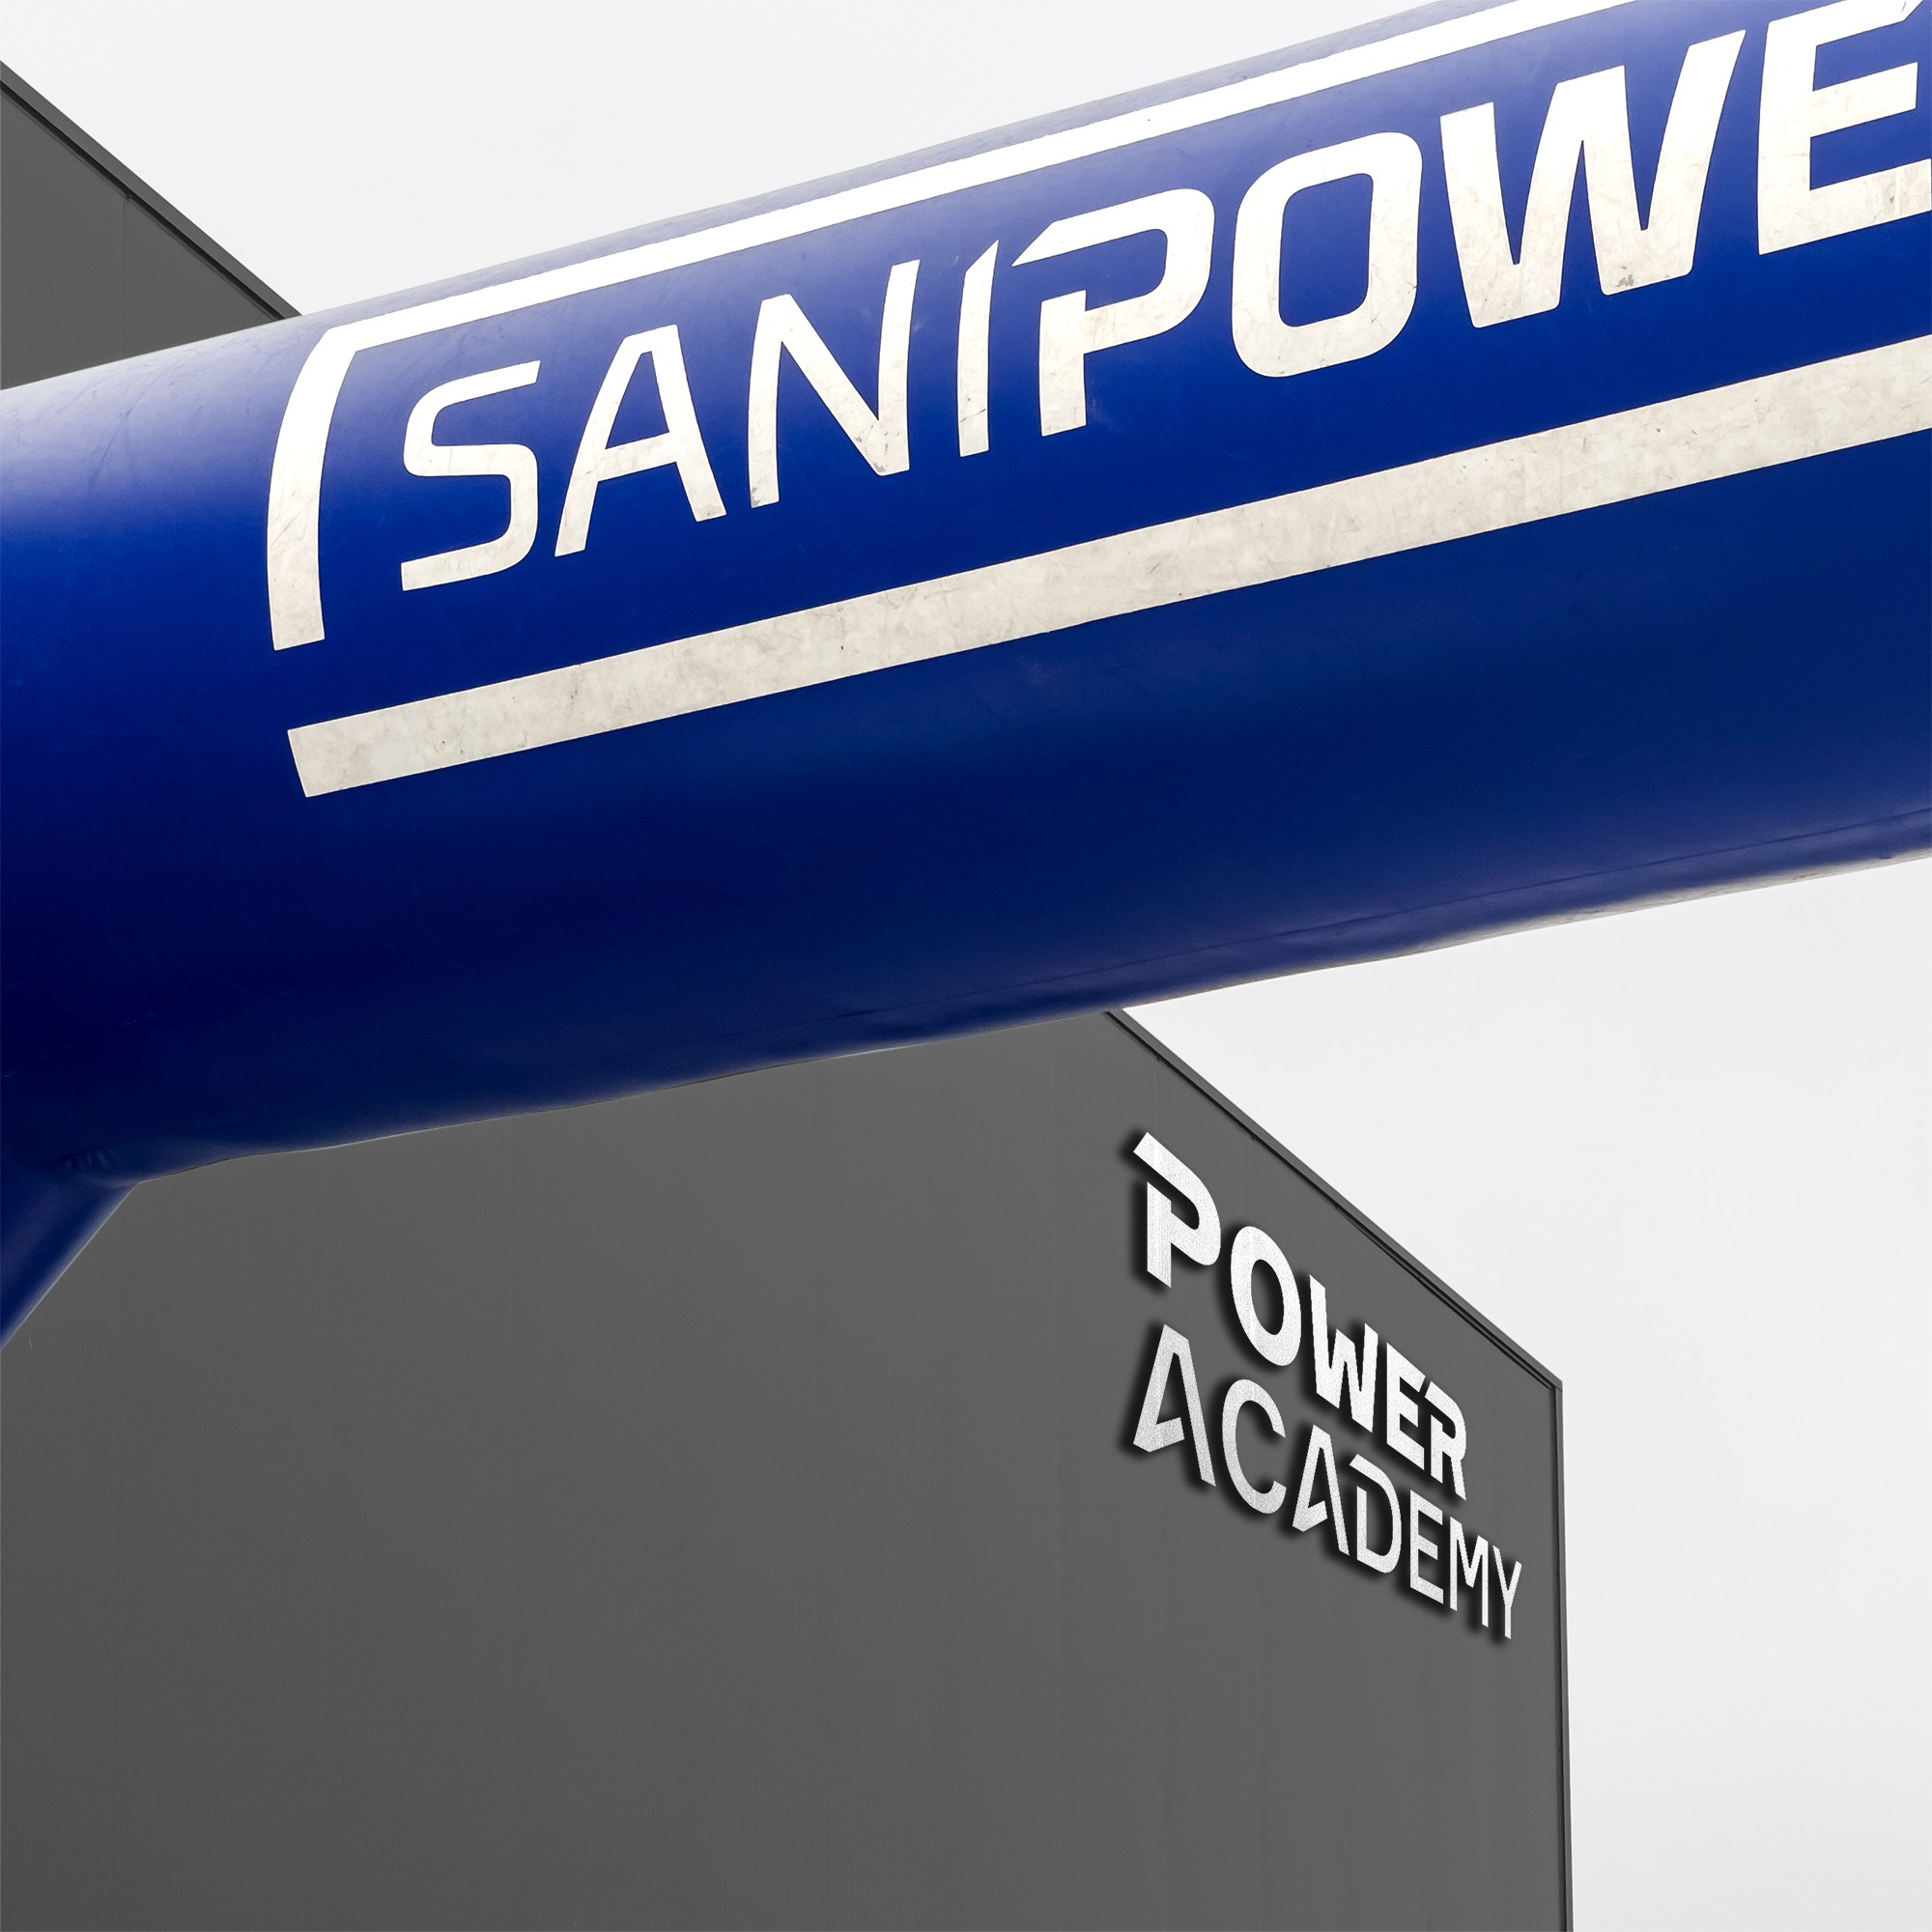 Power Academy - Formação Proteu® Fotovoltaico e Bombas de Calor Sanitárias Square - 22-07-2022